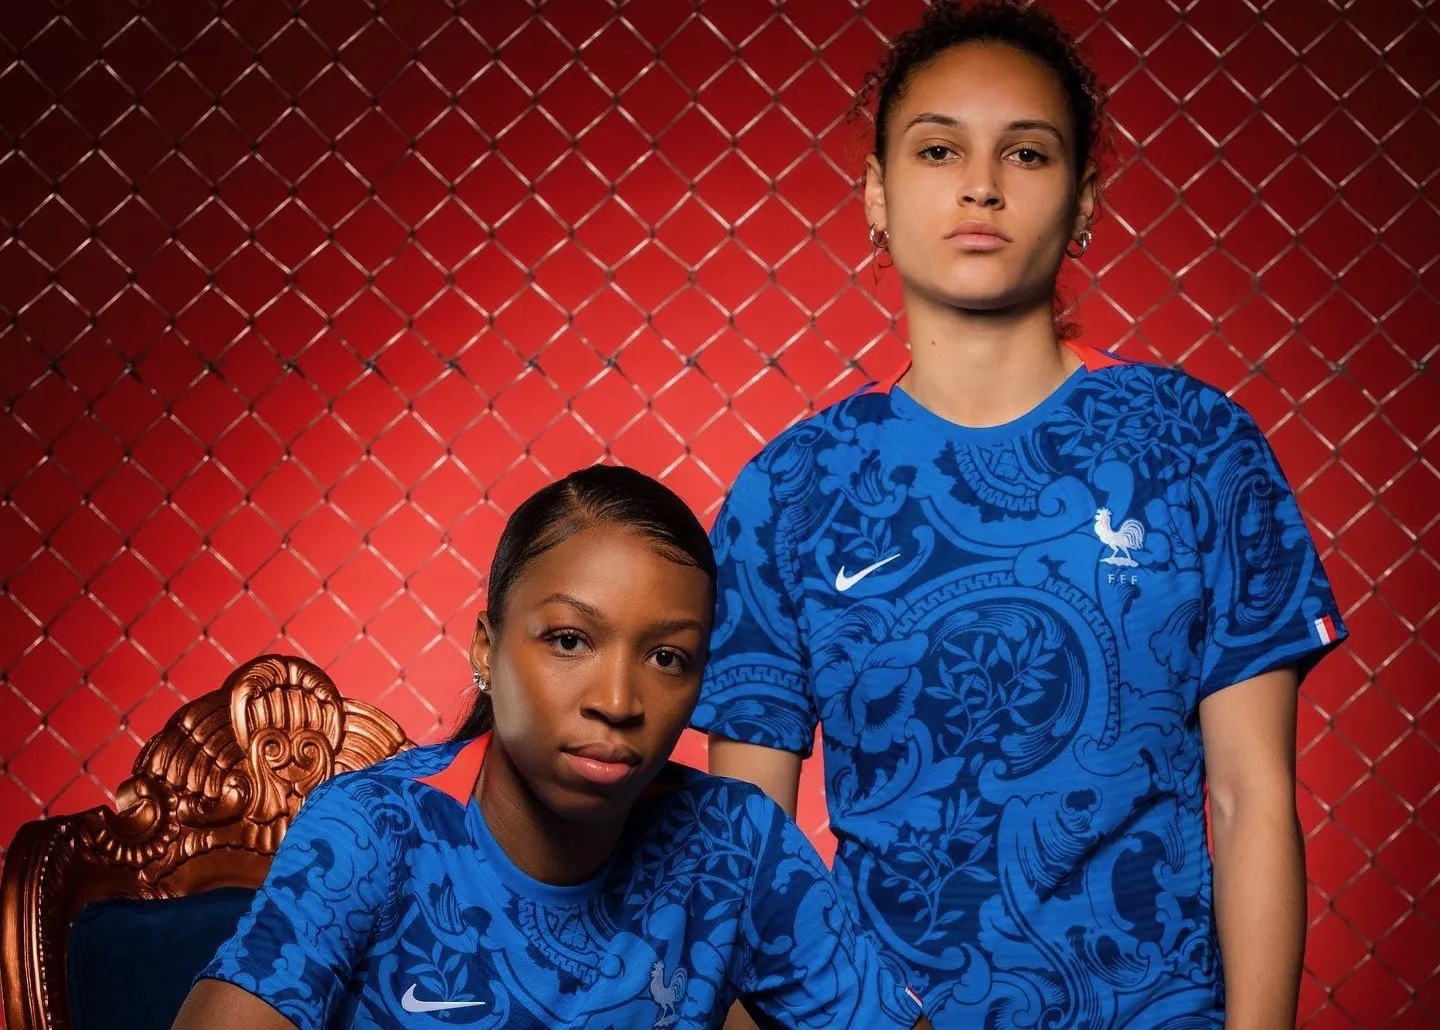 Maillot domicile équipe de France féminine 2023 – Femme - Official